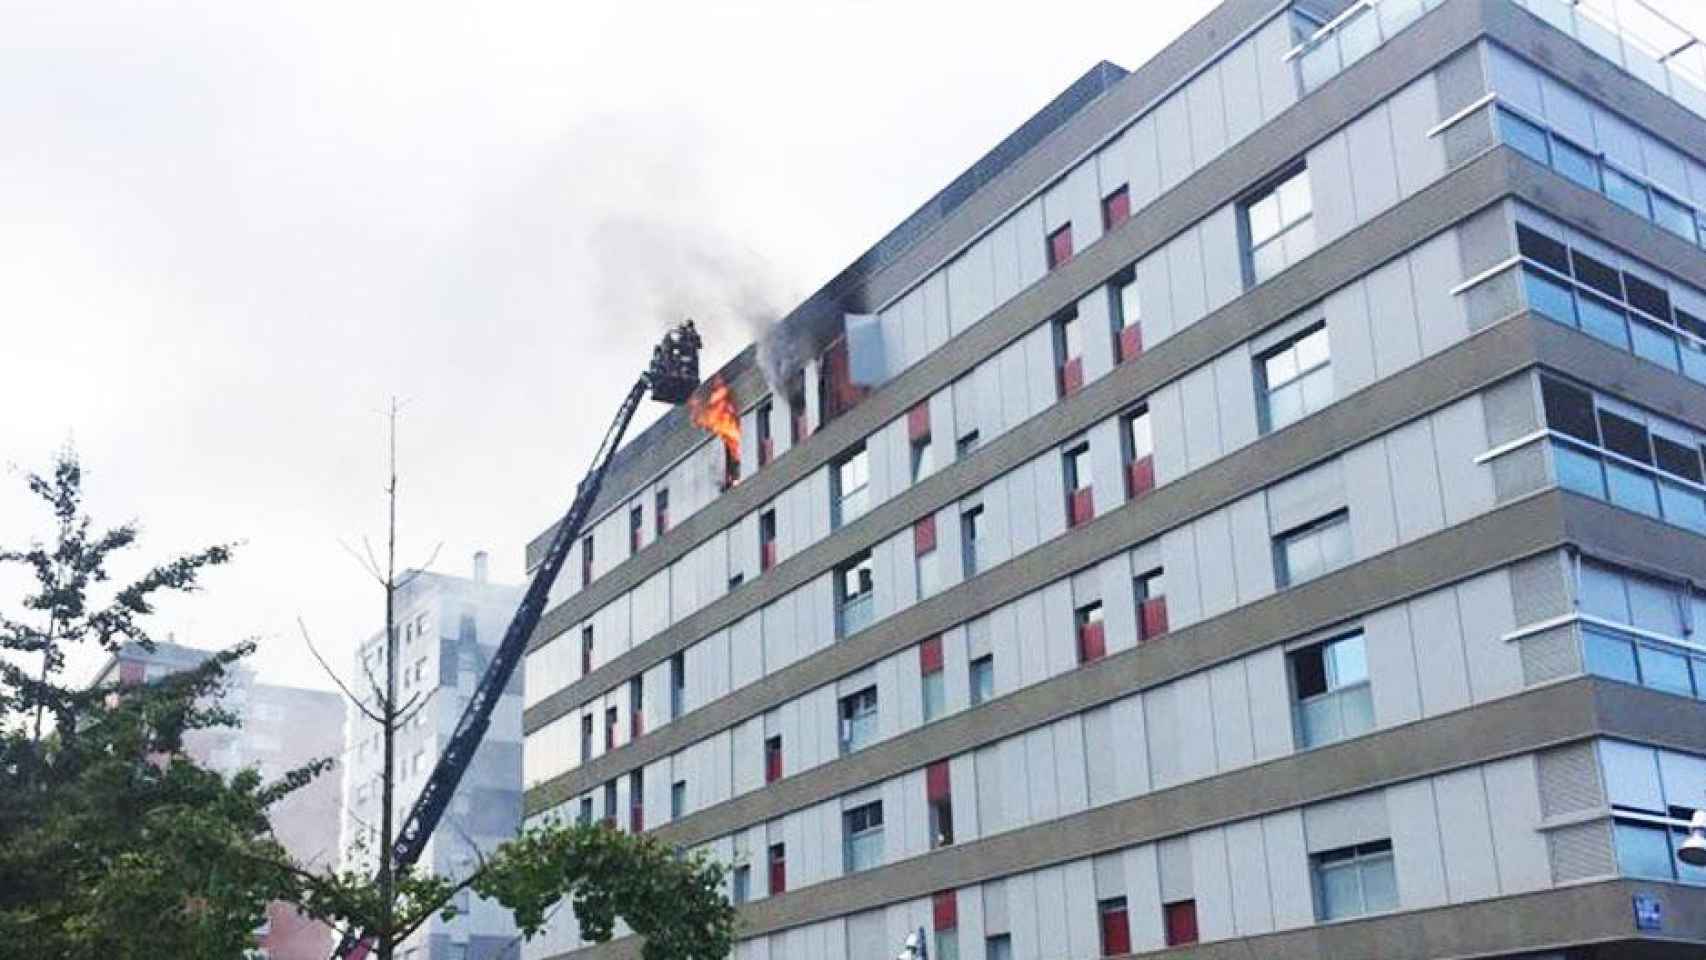 Efectivos de los bomberos en el incendio de un edificio de Terrassa / BOMBERS